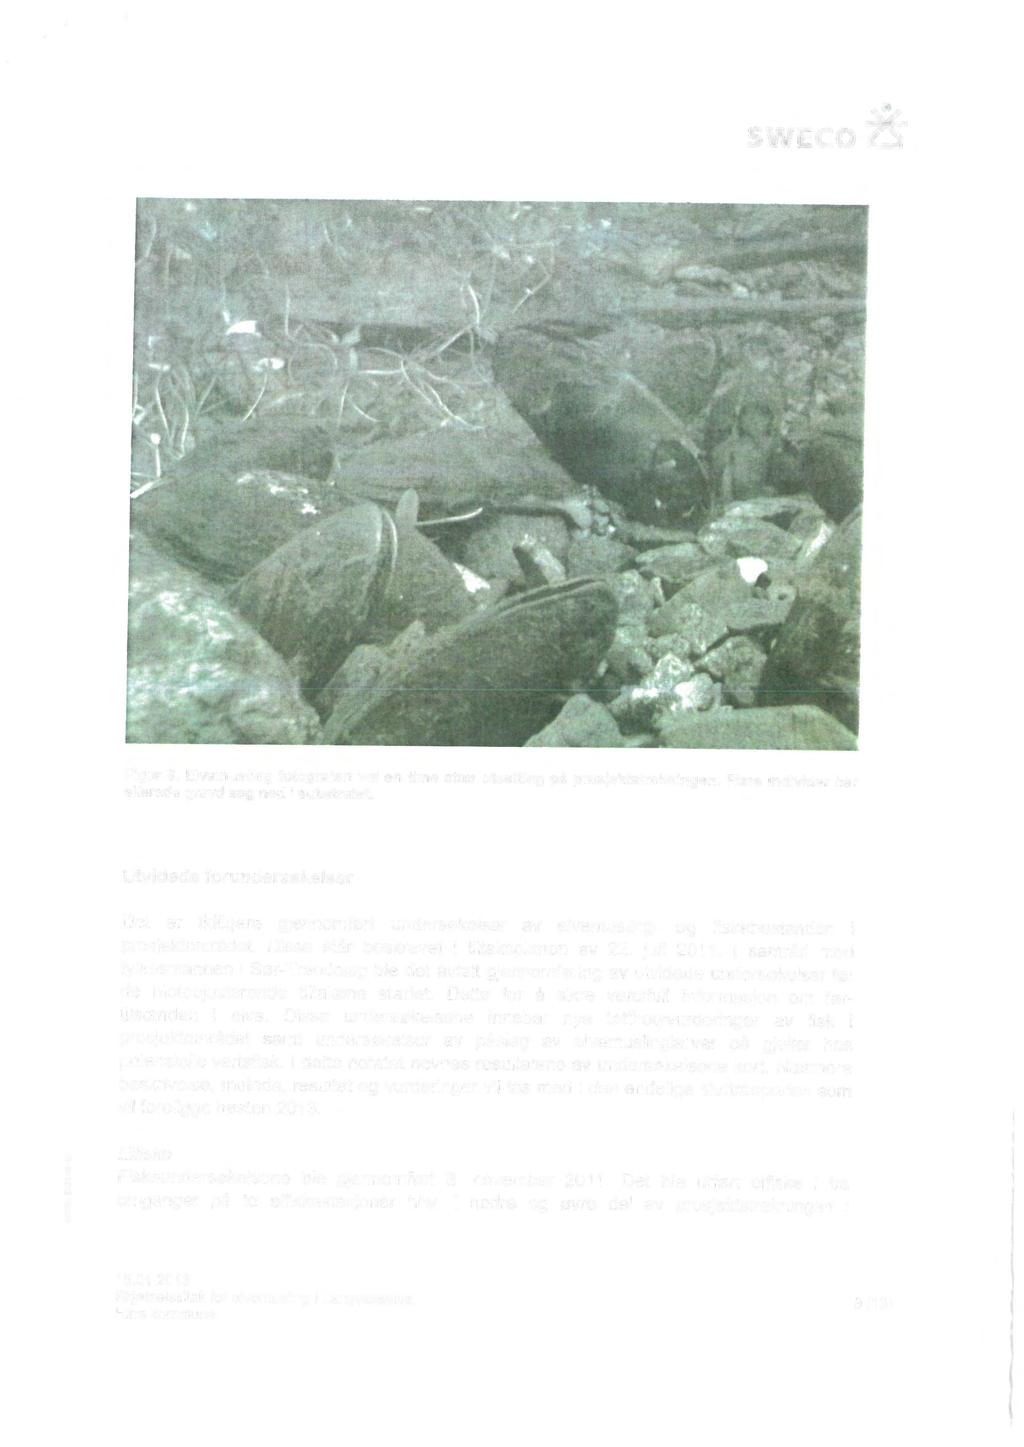 Figur 9. Elvemusling fotografert vel en time etter utsetting på prosjektstrekningen. Flere individer har allerede gravd seg ned i substratet.